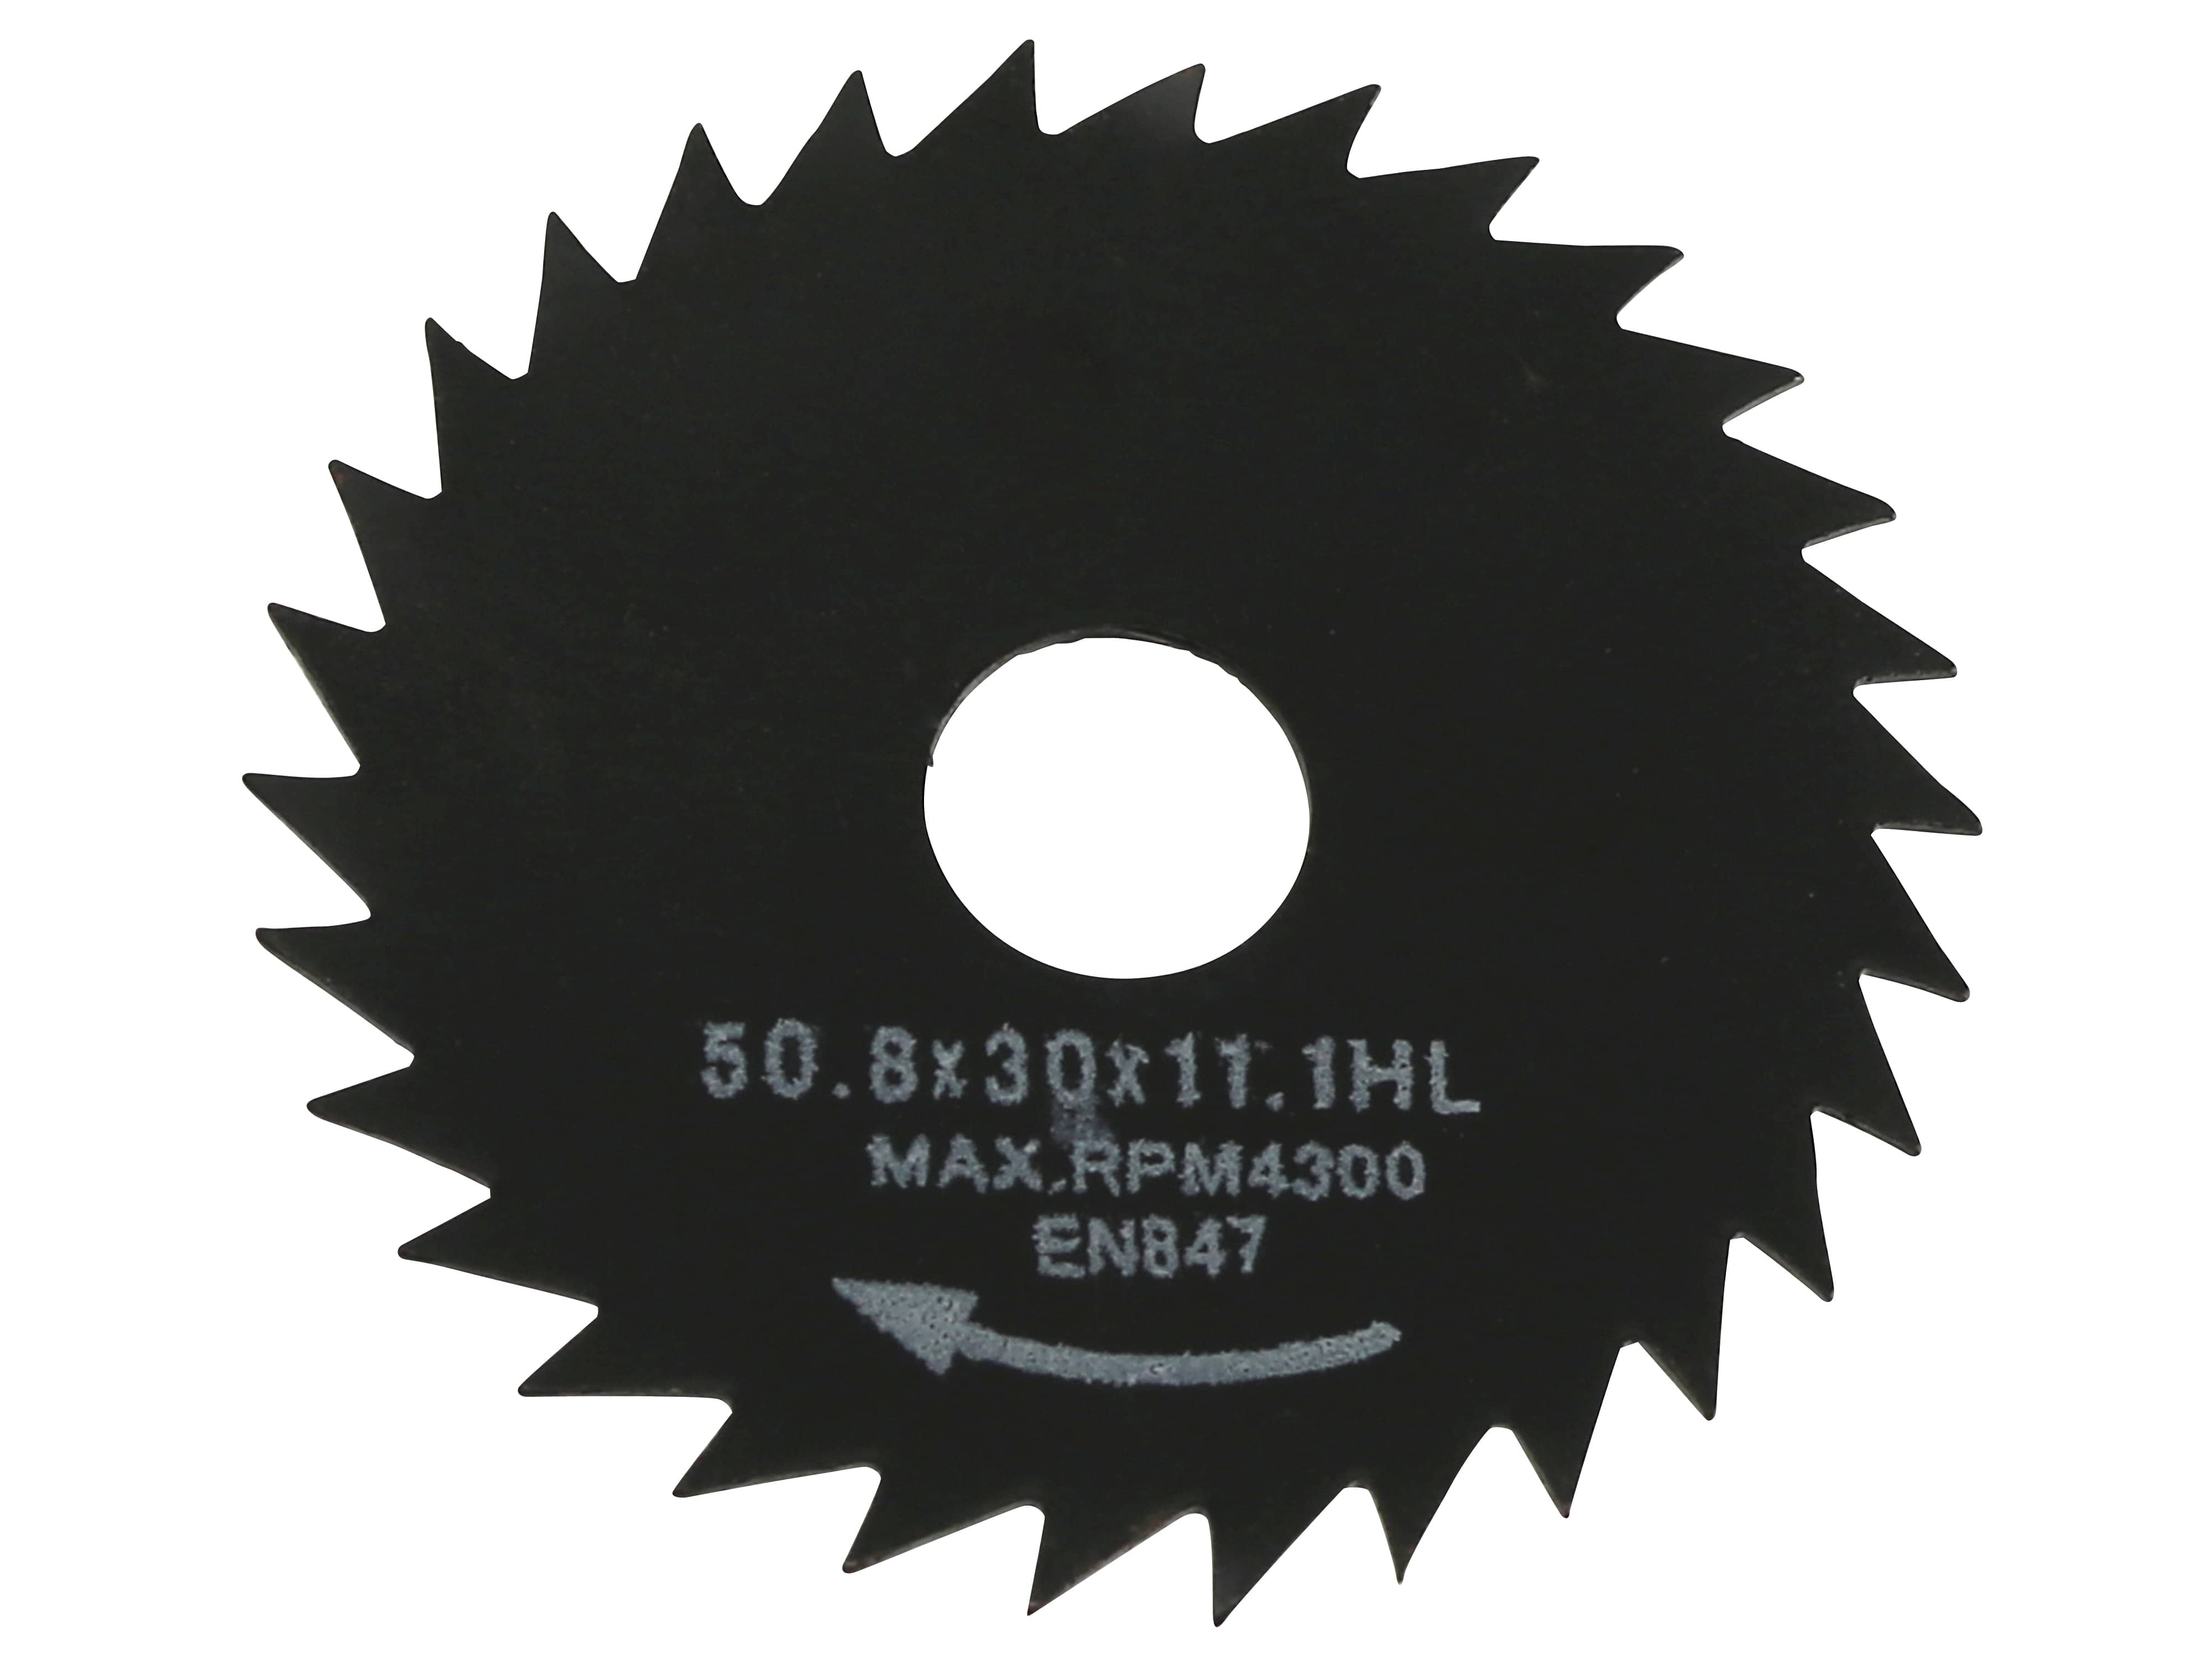 DAYTOOLS Mini-Sägeblätter SB-50.8-5, 50,8 mm, 5-teilig